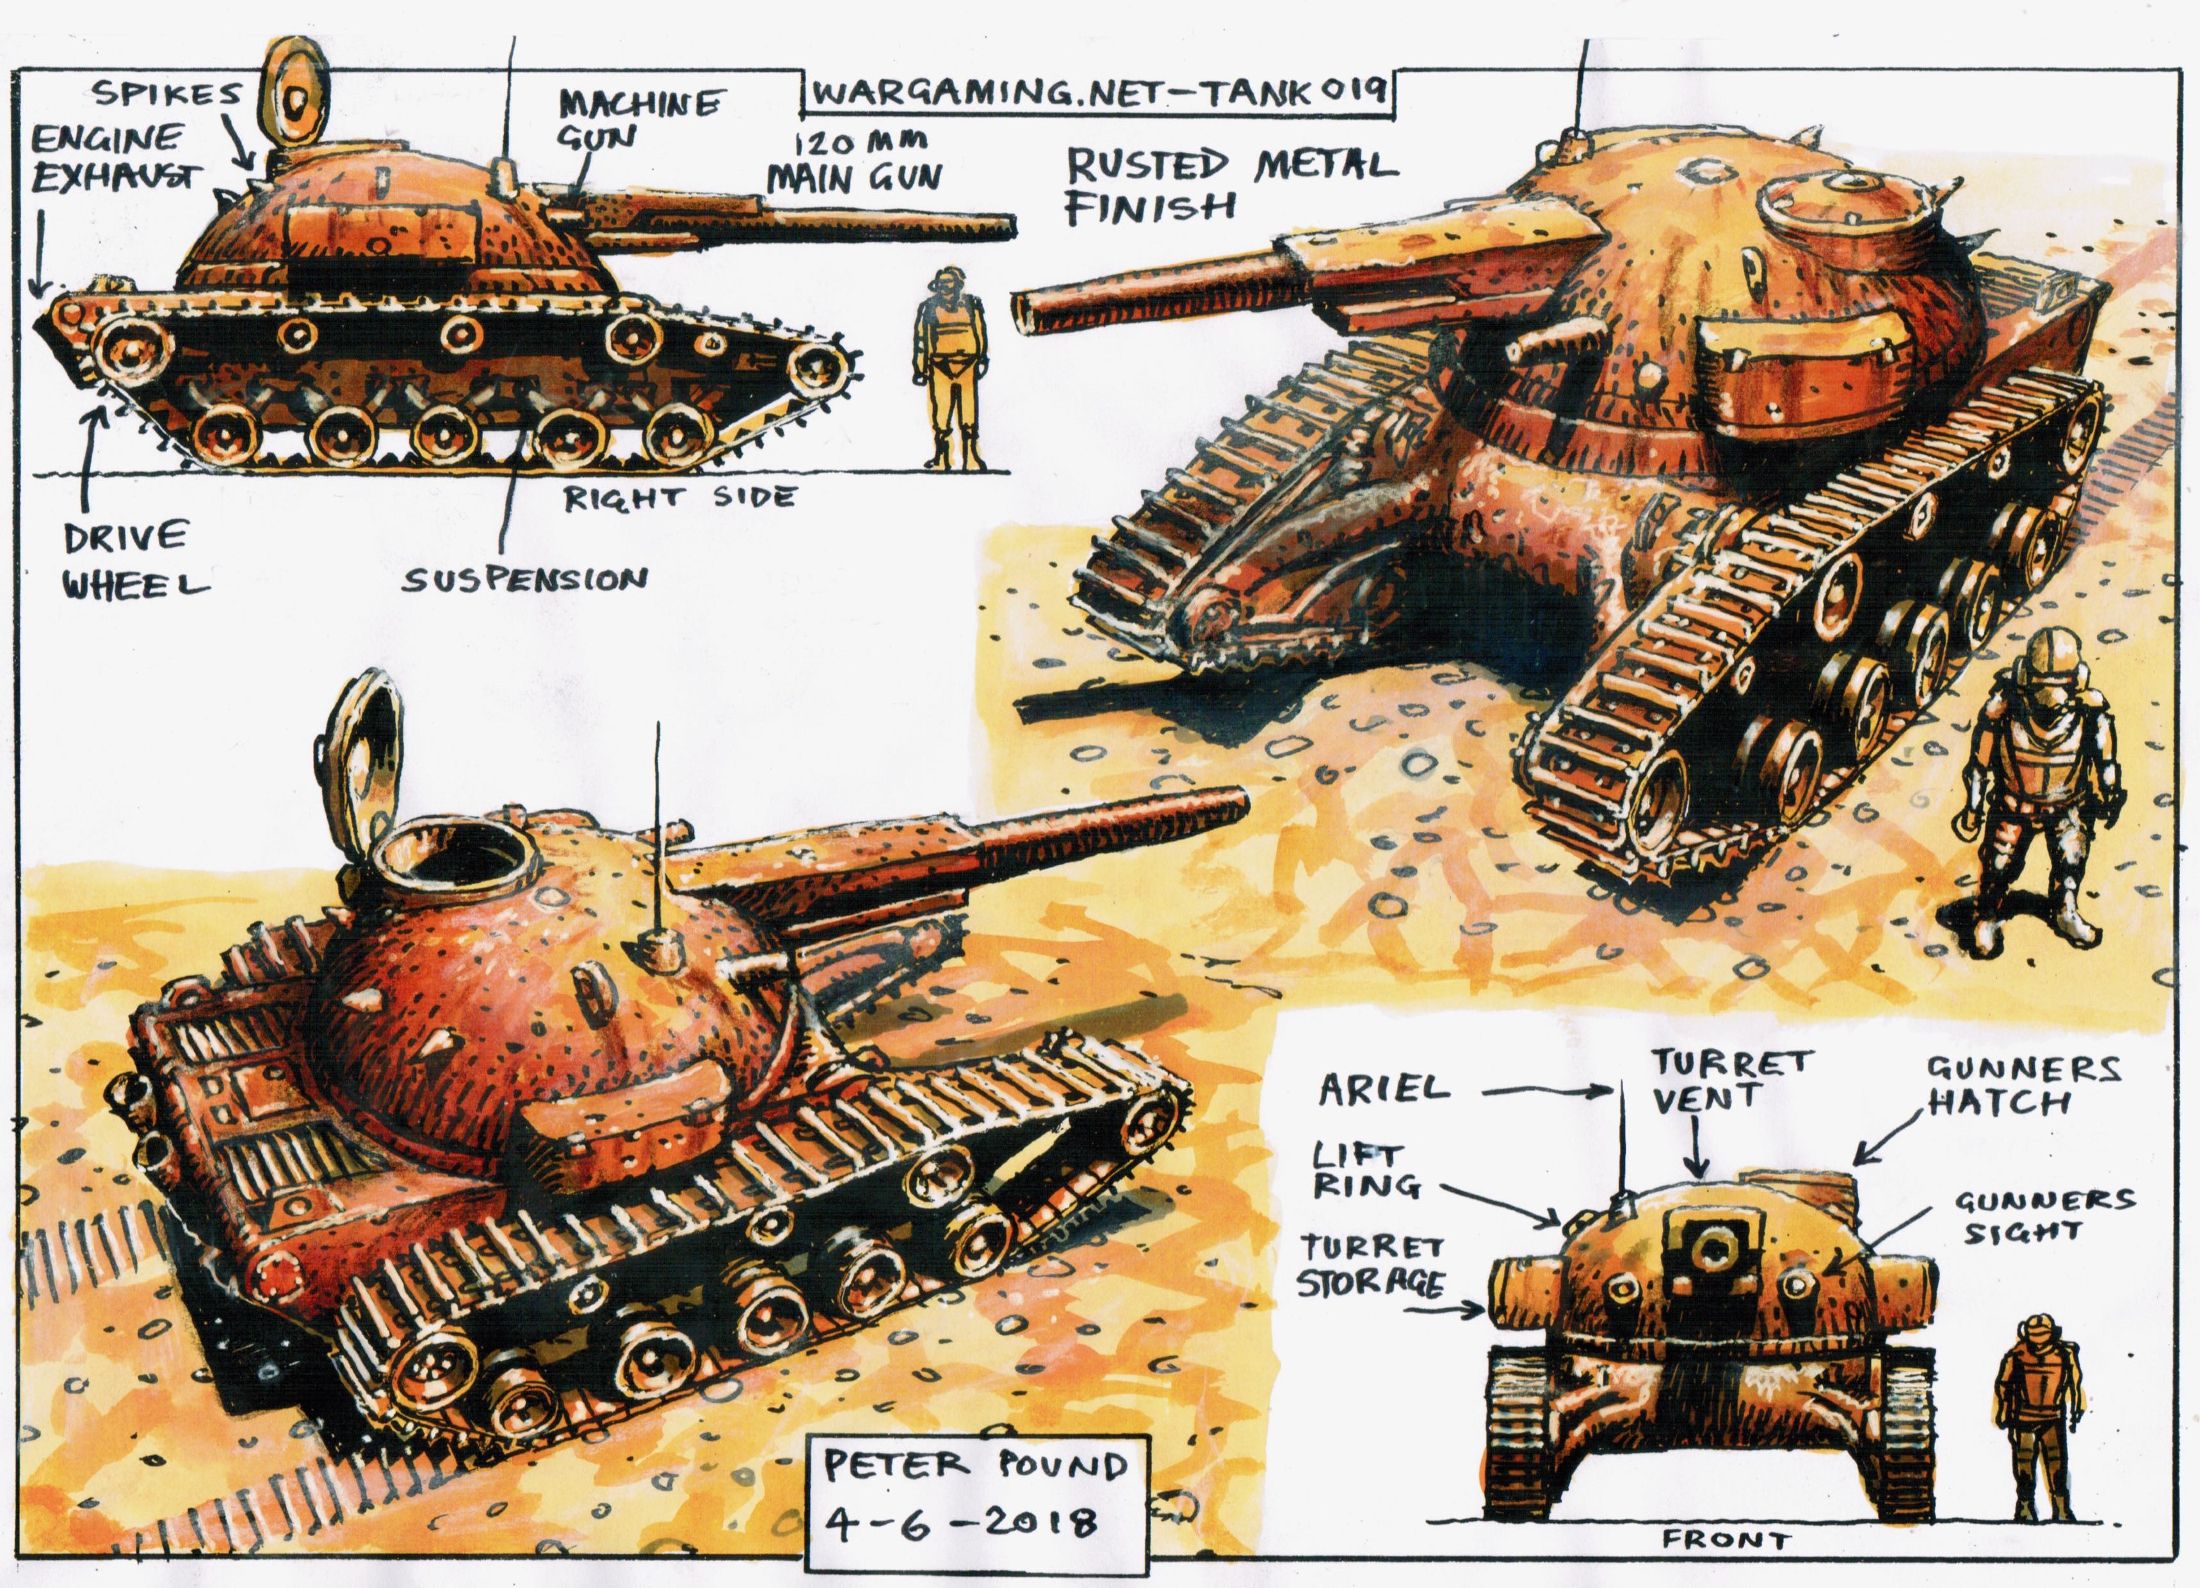 World of Tanks Blitz Peter Pound Scavenger